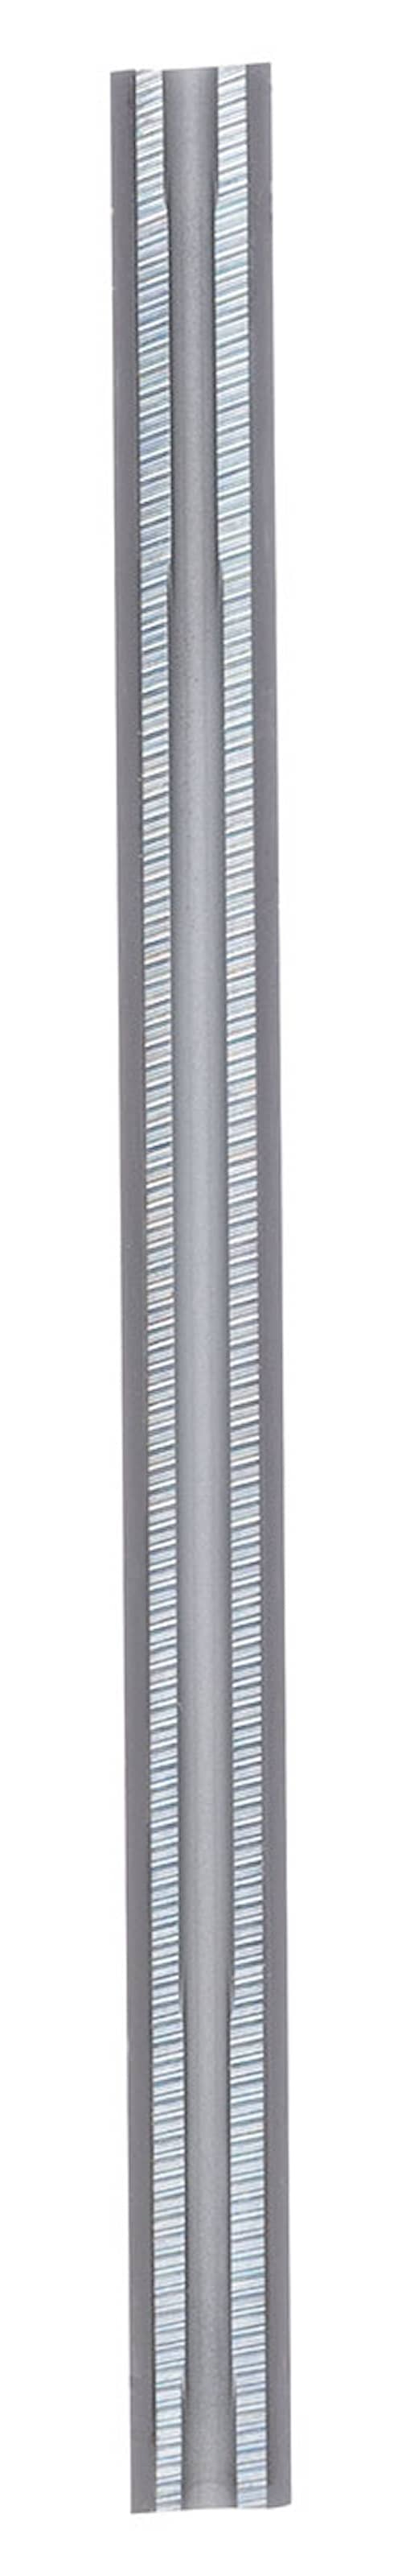 Bosch Hyvelkniv HM 56 mm 2 st